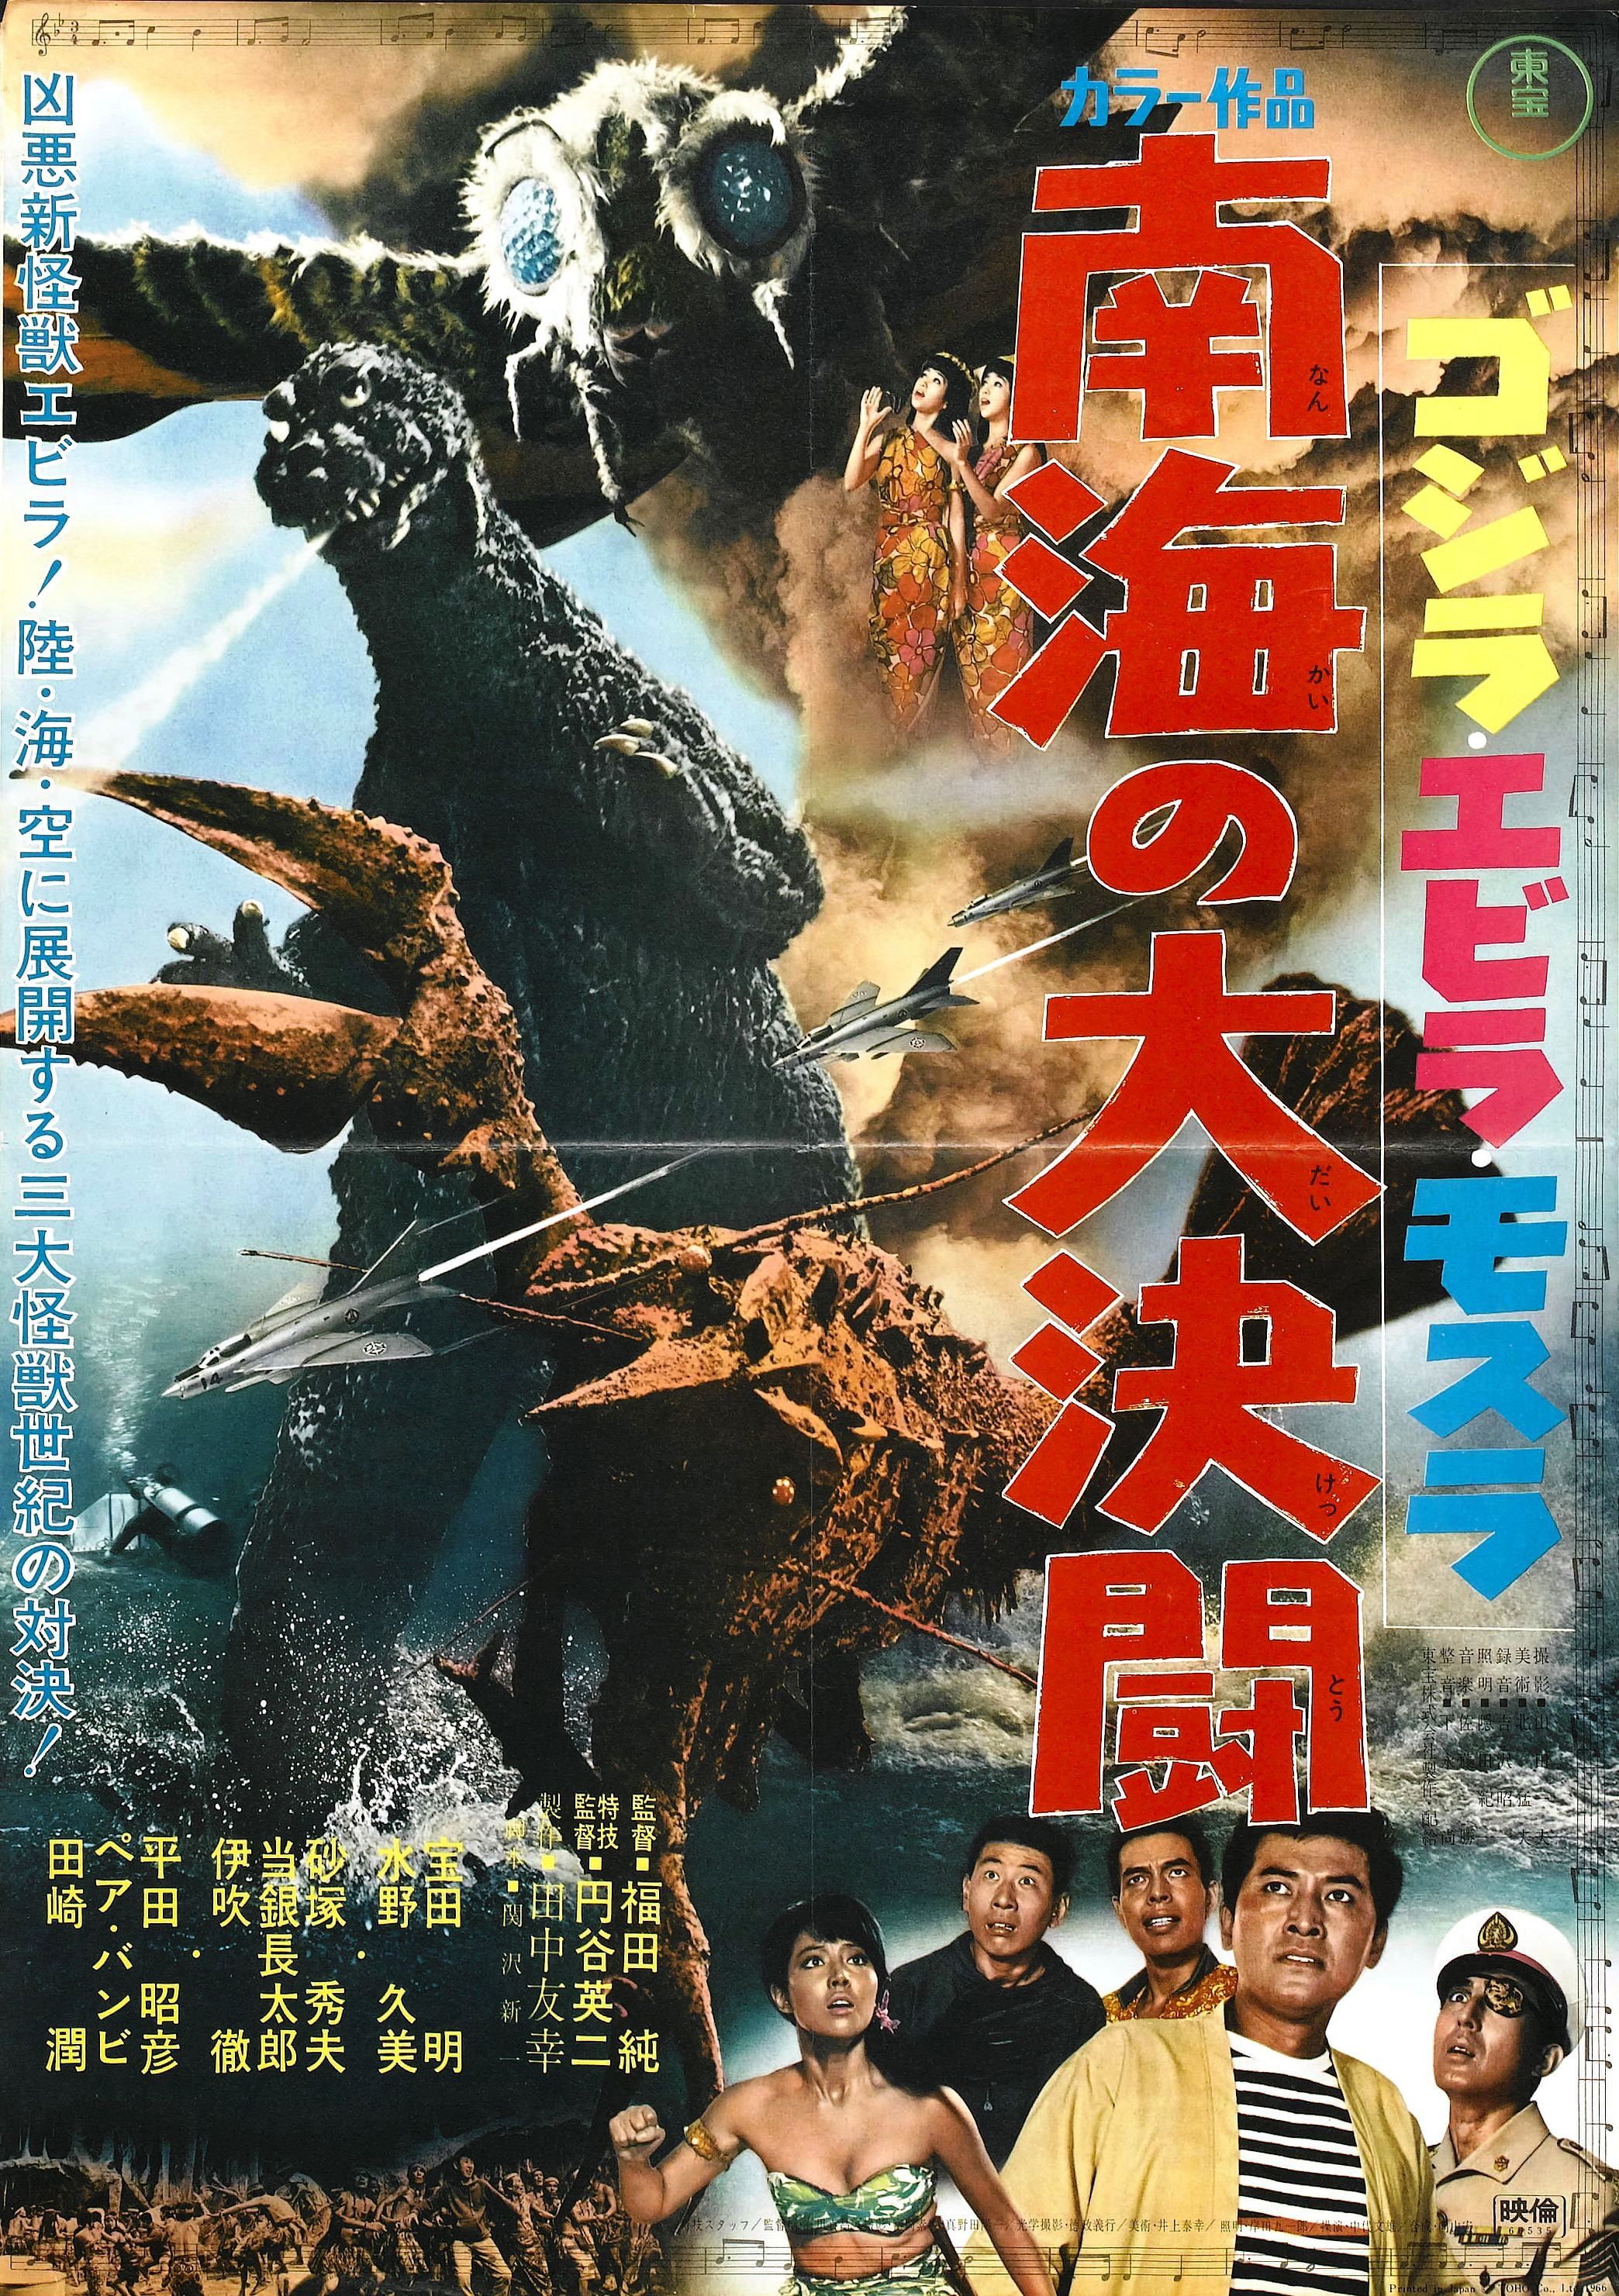 Godzilla_vs_sea_monster_poster_01.jpg